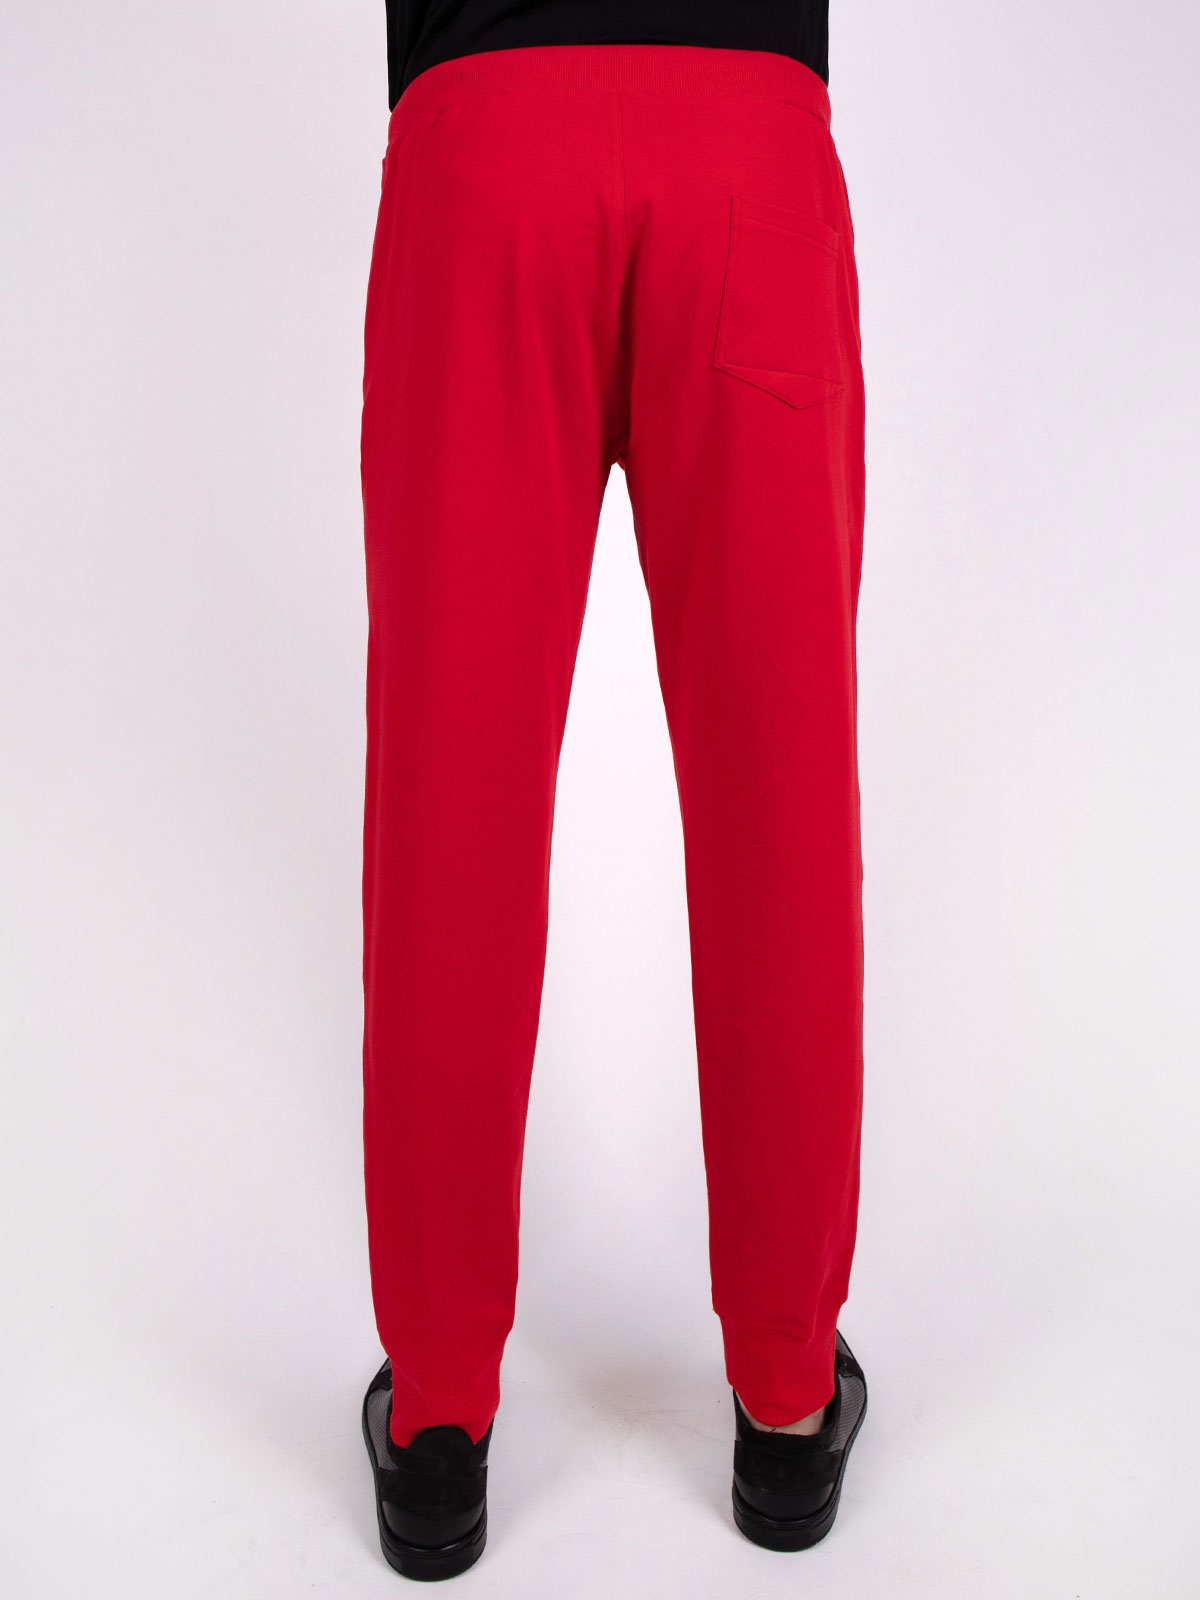  αθλητικό παντελόνι σε κόκκινο χρώμα  - 63245 € 14.06 img3